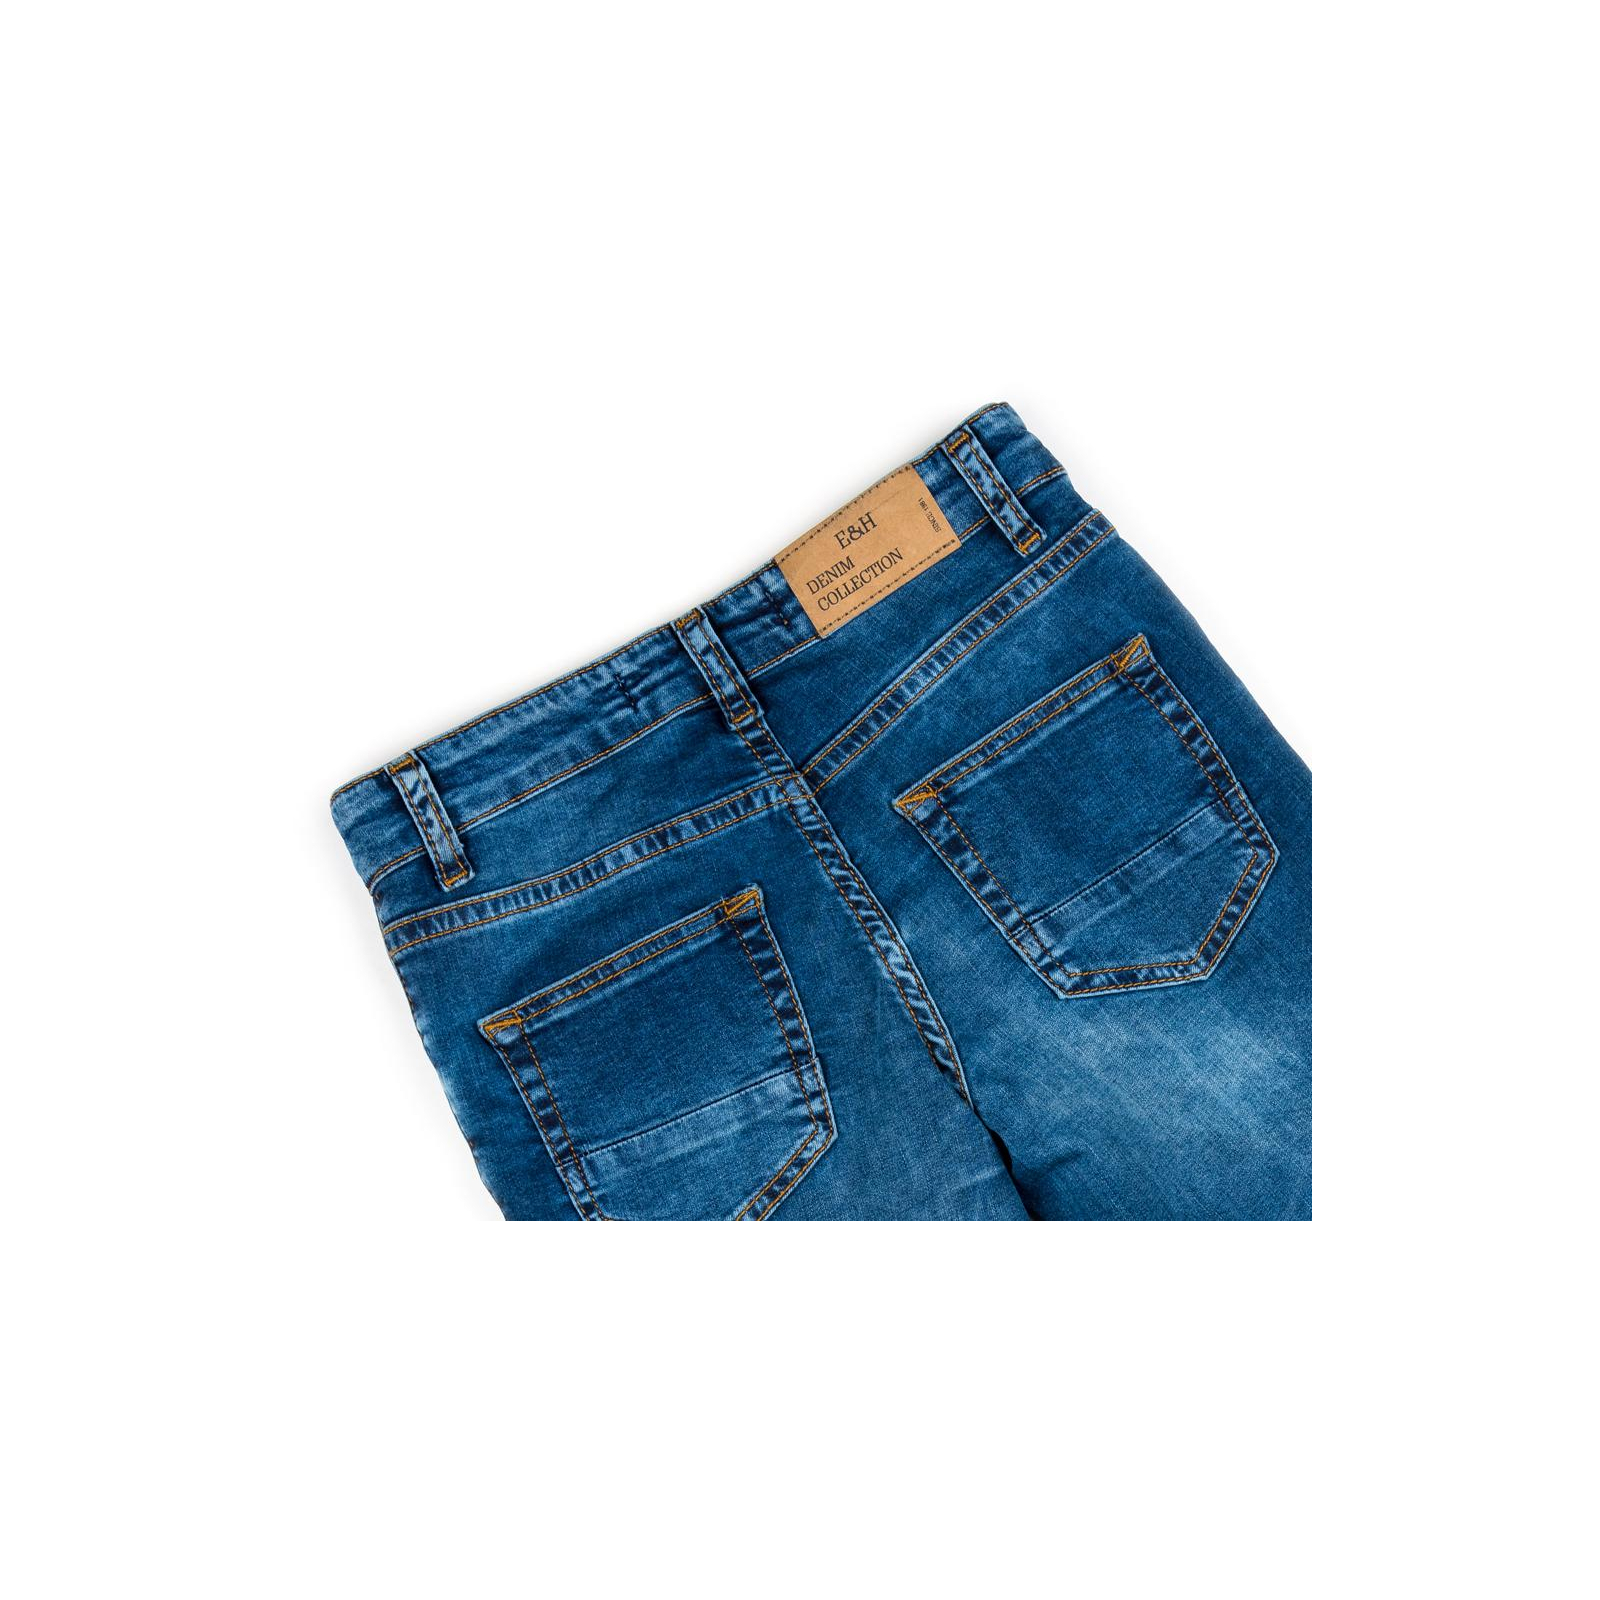 Штаны детские Breeze джинсовые (OZ-18611-116B-blue) изображение 4